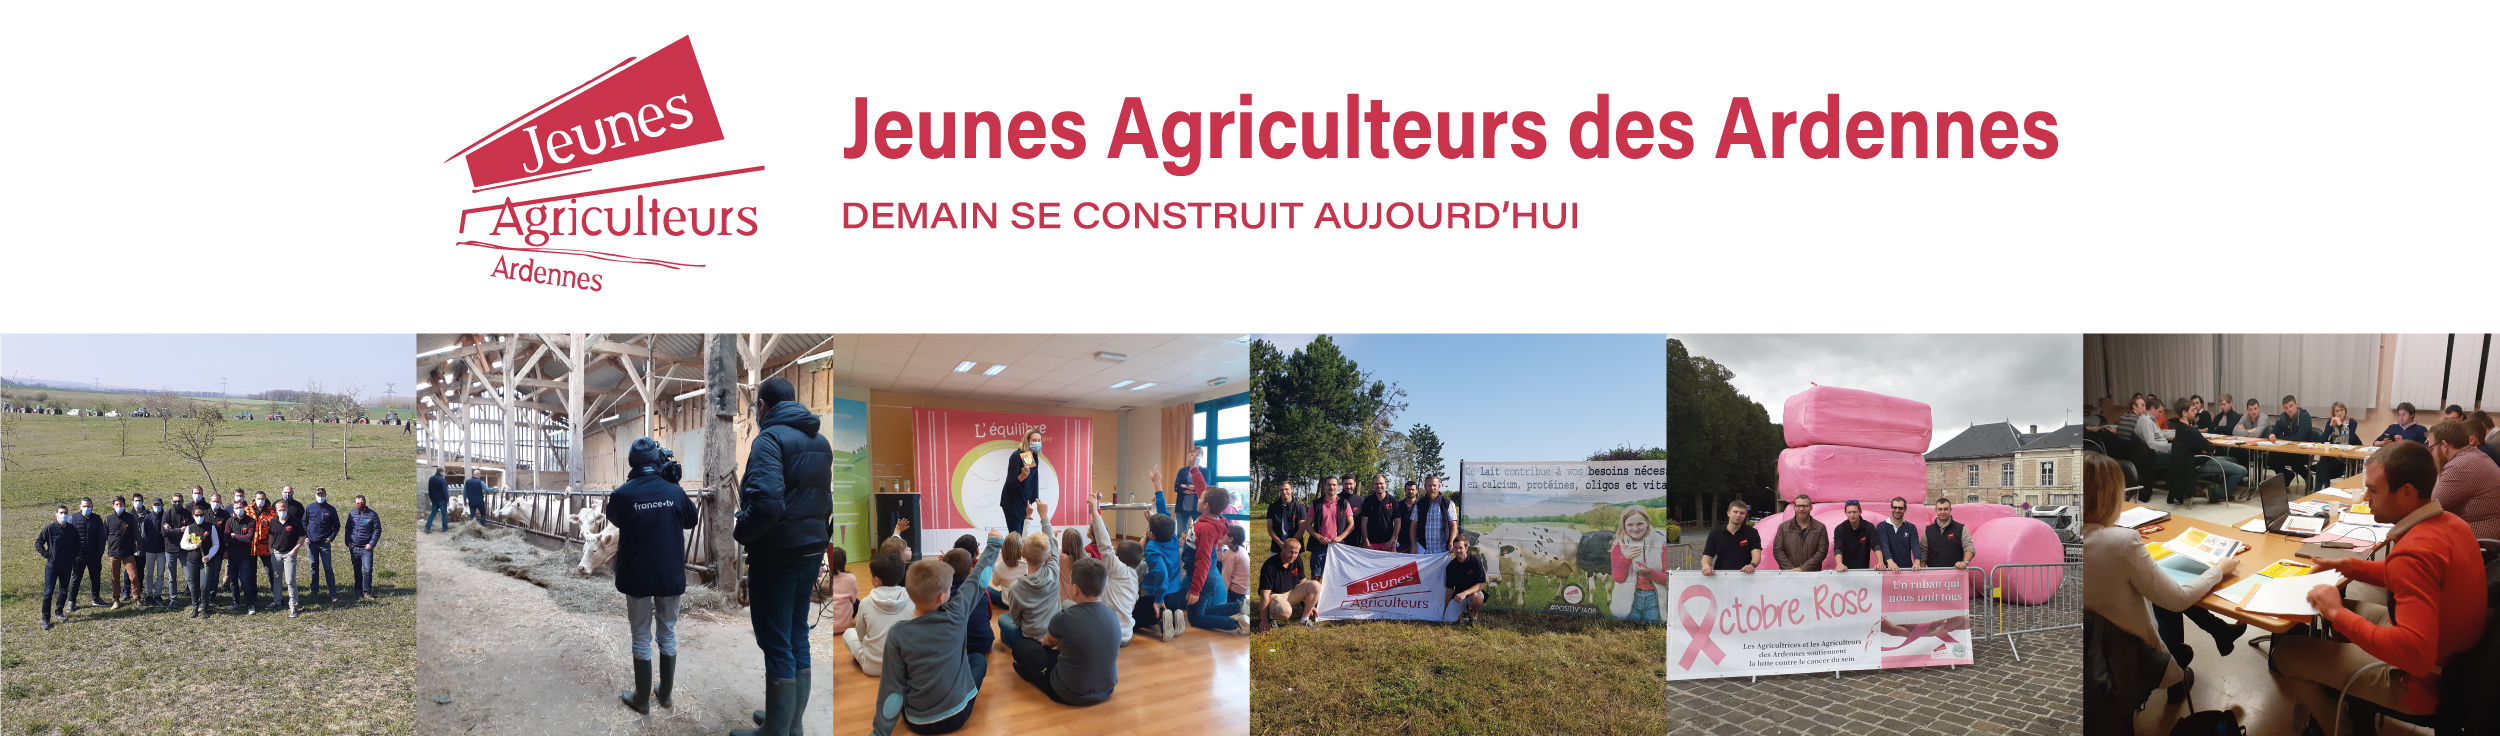 Jeunes Agriculteurs des Ardennes